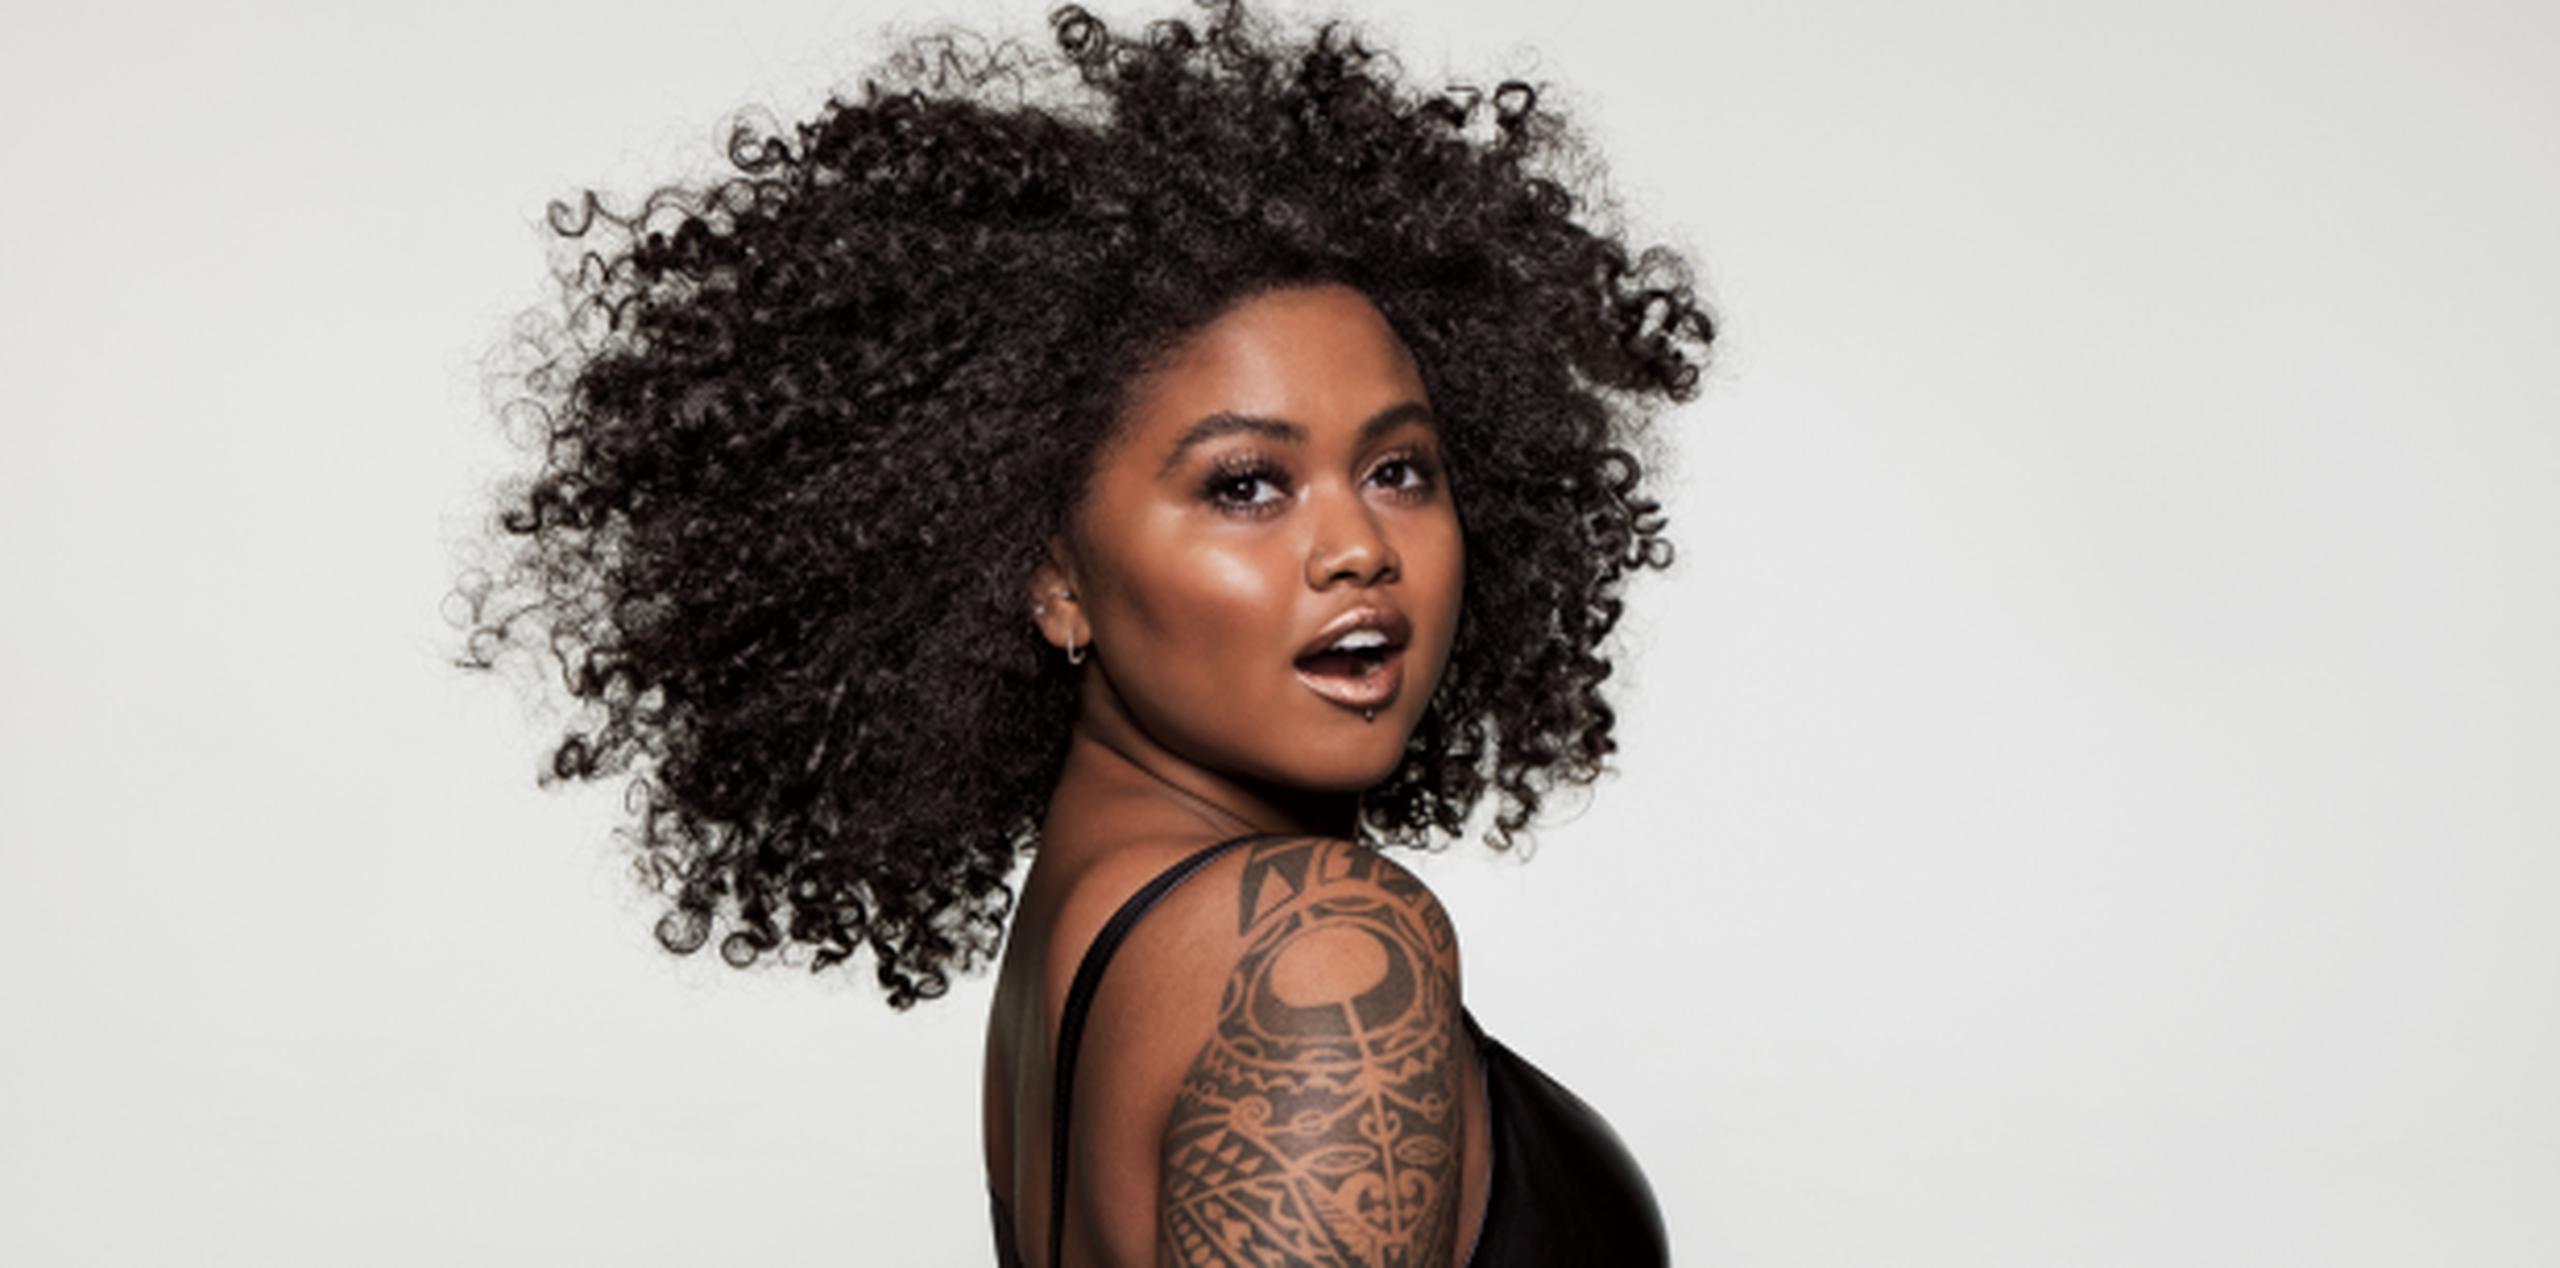 "Es increíble como nuestros clientes se sienten identificados con nosotros", dijo la artista del maquillaje Taija Kerr, la primera mujer afro-hawaiana en ser modelo de una campaña de cosméticos en Estados Unidos. (EFE)